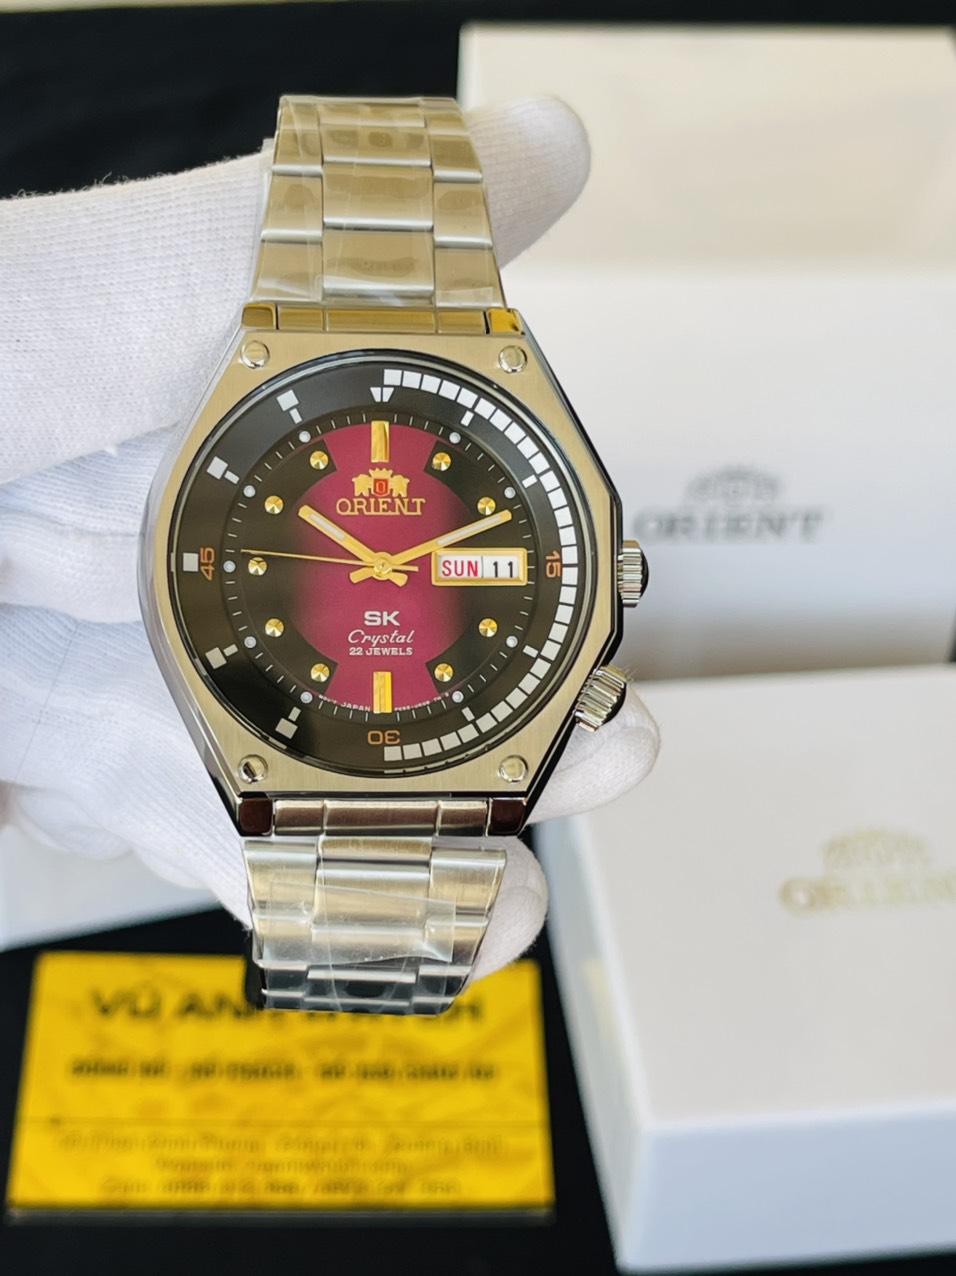 Đồng hồ Orient SK Crystal 21 Jewels - Huyền thoại chế tác đồng hồ cơ